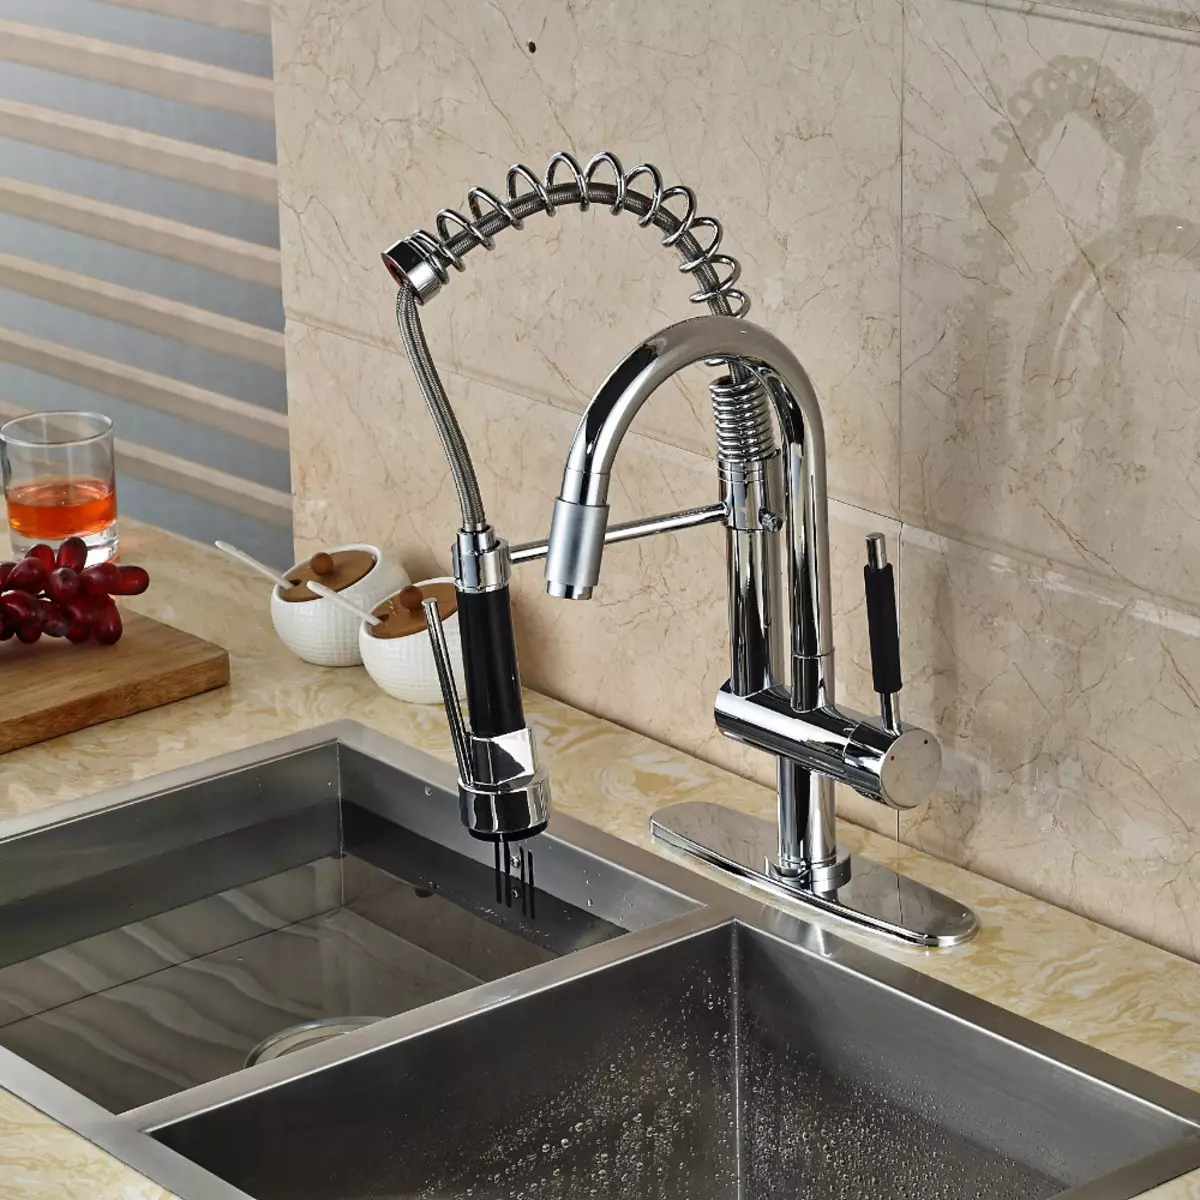 باورچی خانے کے faucets (68 تصاویر): ریٹرو سٹائل اور دیگر ماڈلوں میں دھونے کے لئے باورچی خانے کے نل، طویل اخراج کے ساتھ ڈوب کے لئے سینسر مکسر کا جائزہ لینے کے، ترمامیٹر 21053_28